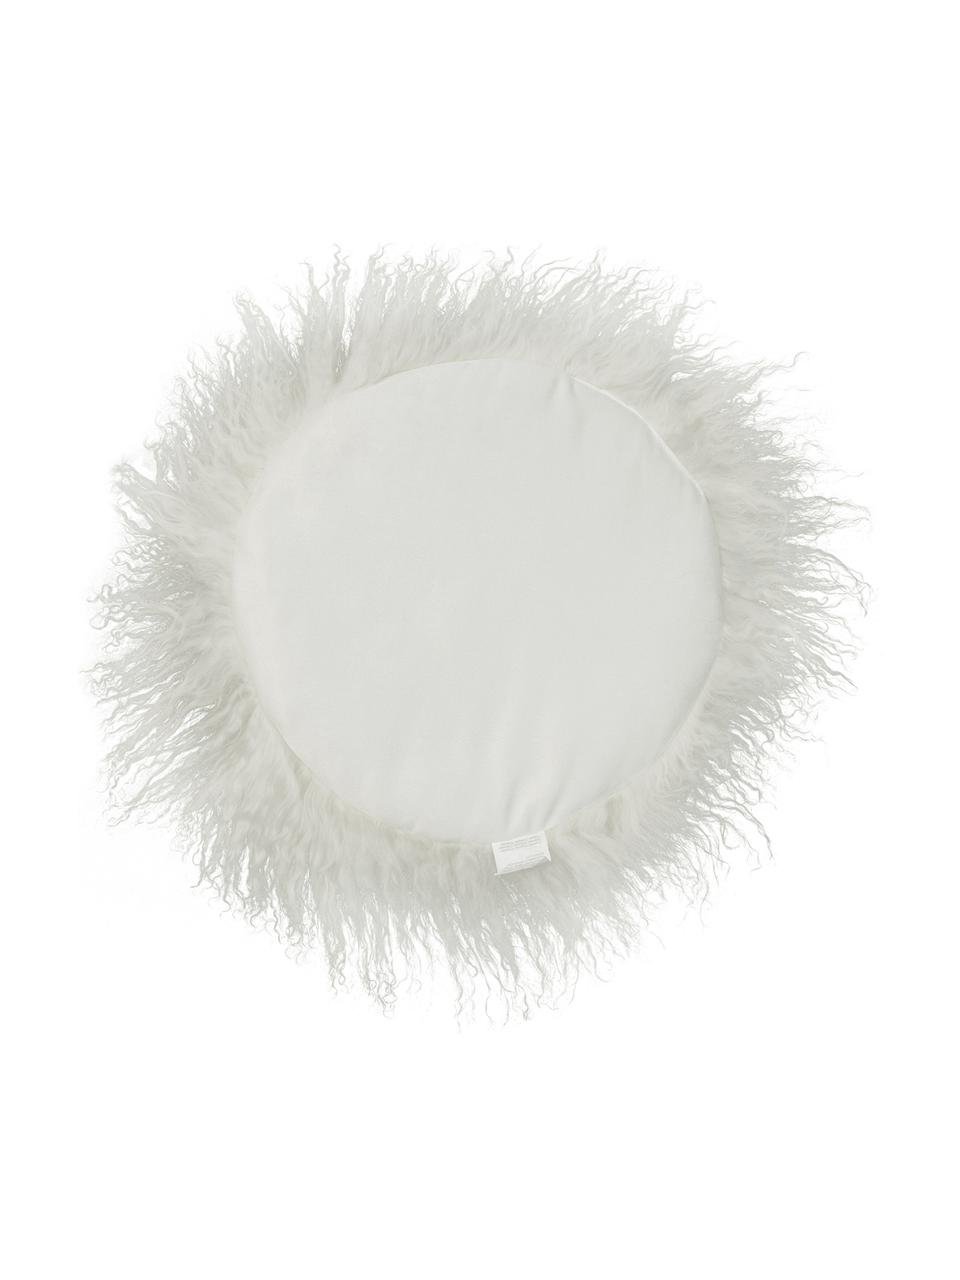 Galette de chaise ronde en peau d'agneau à longs poils frisés Ella, Blanc naturel, Ø 37 cm